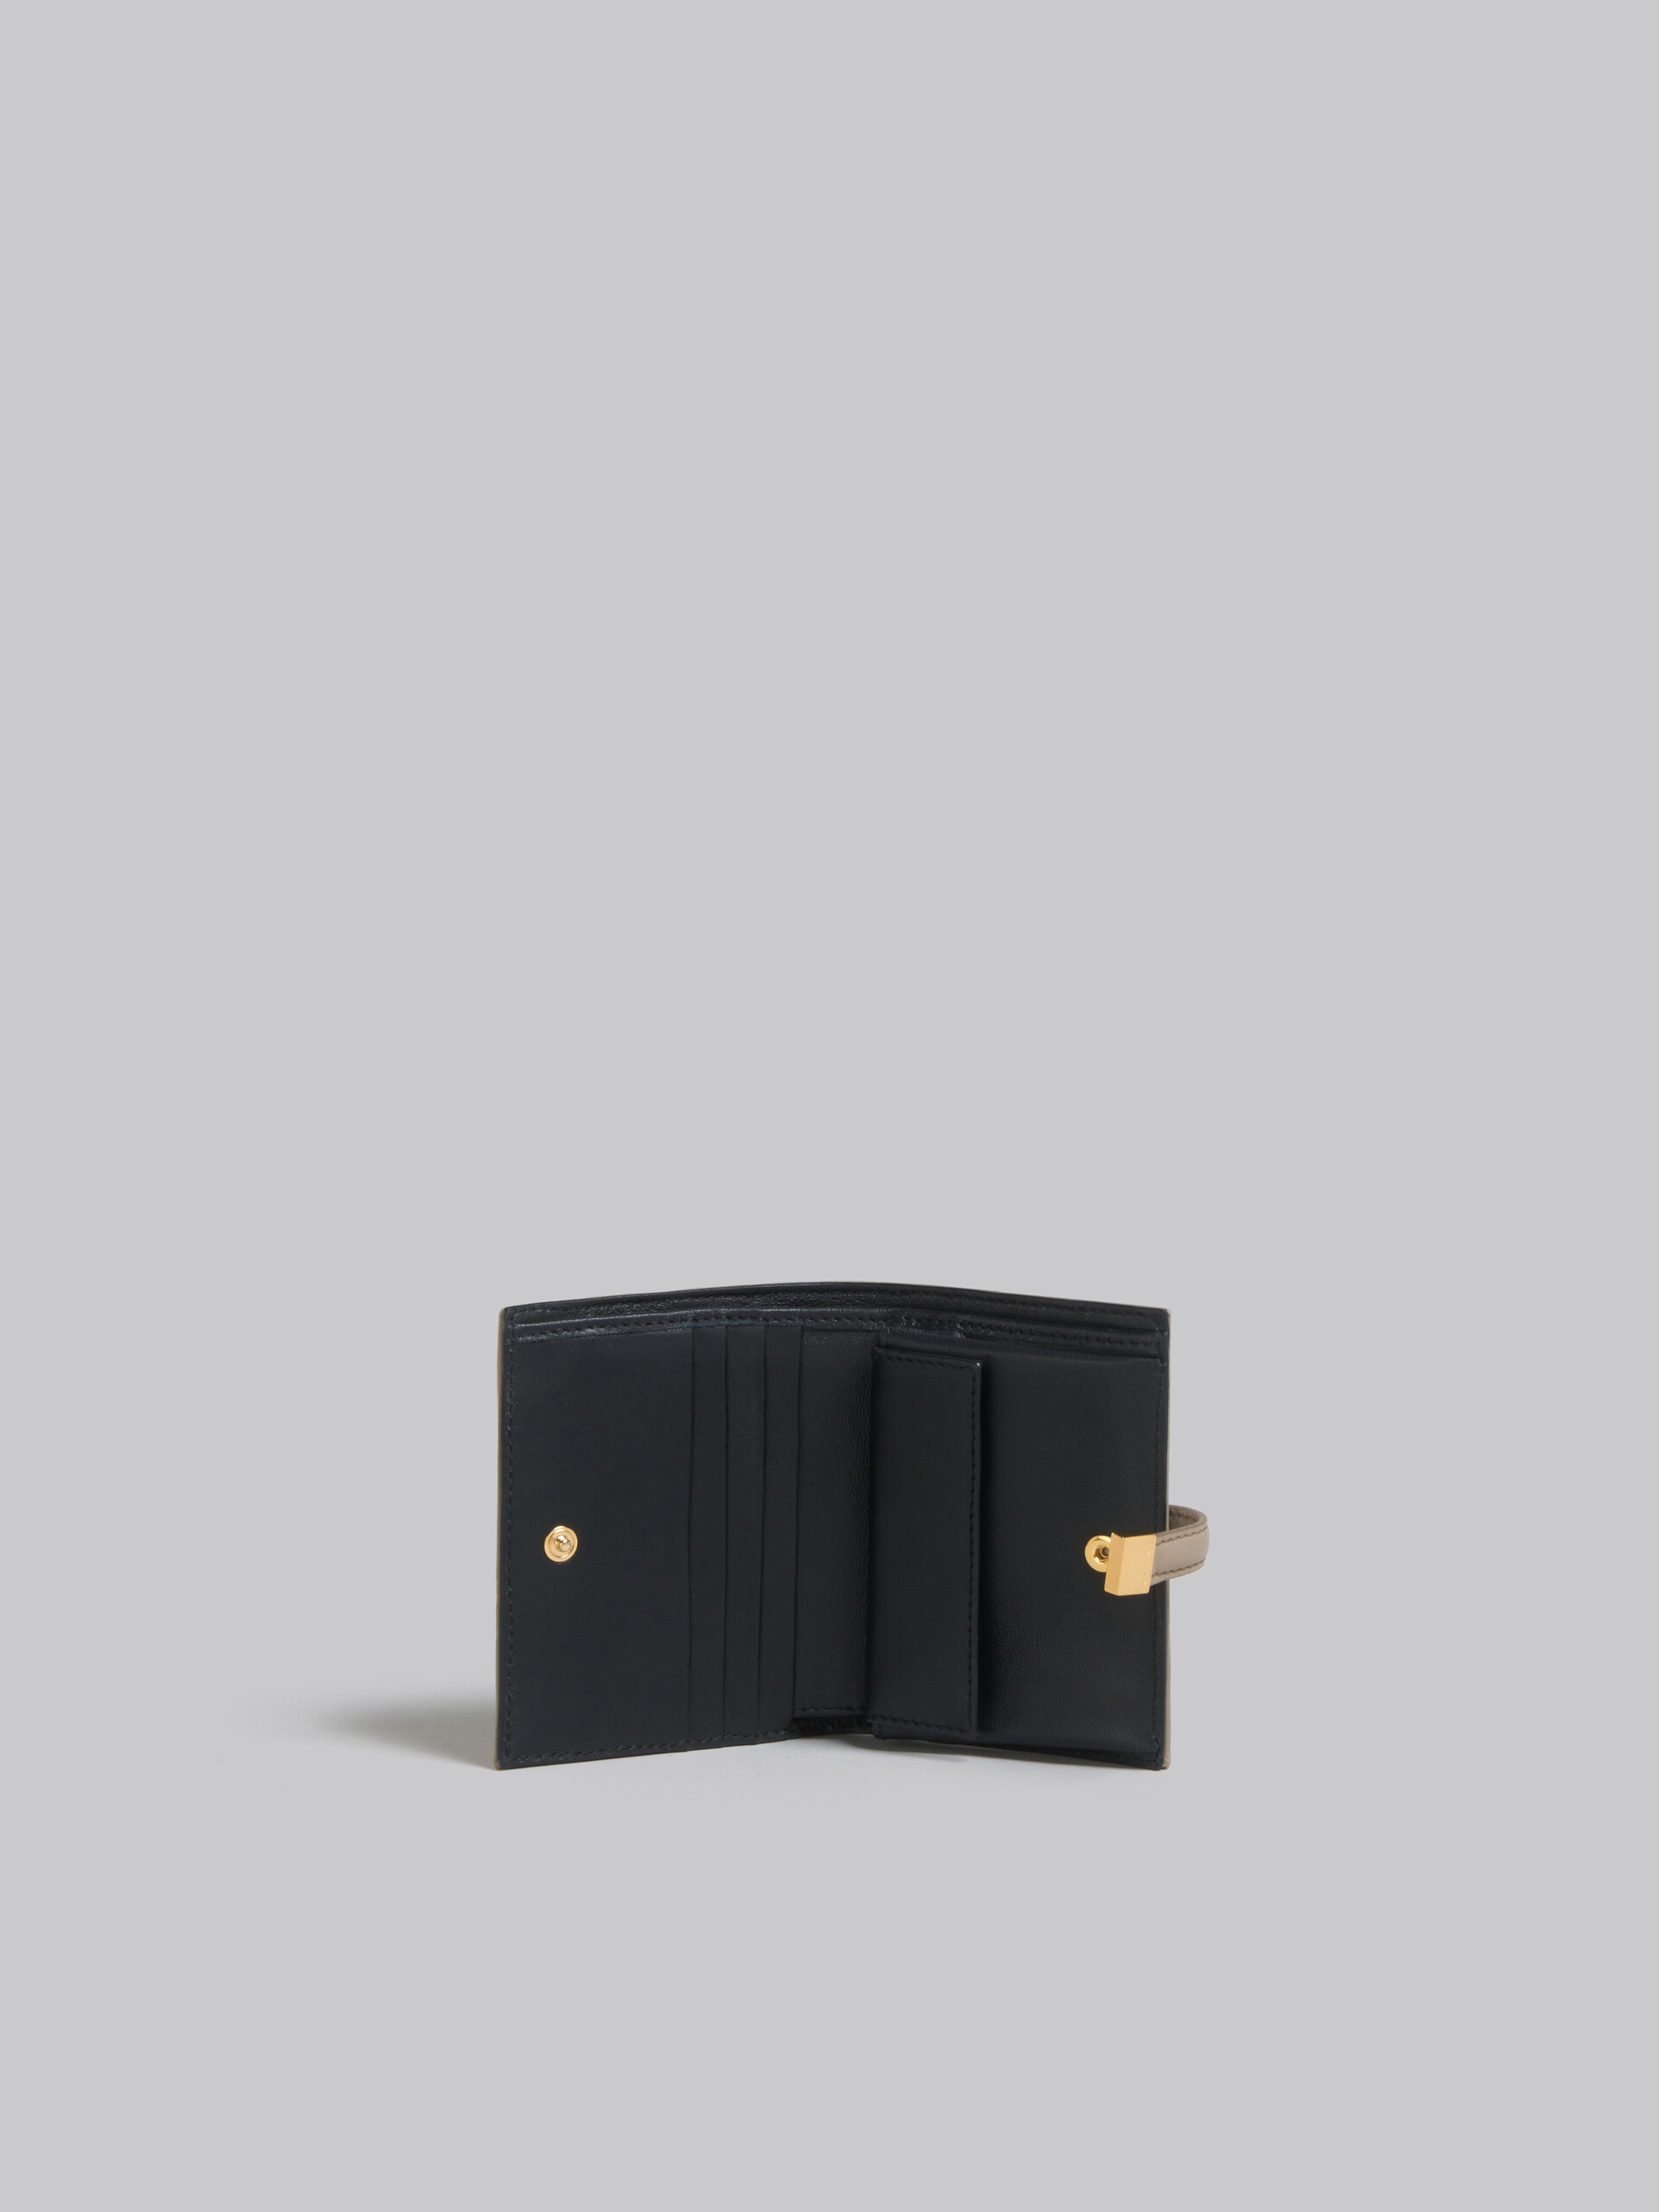 ブラック レザー製二つ折りPrisma ウォレット - 財布 - Image 2